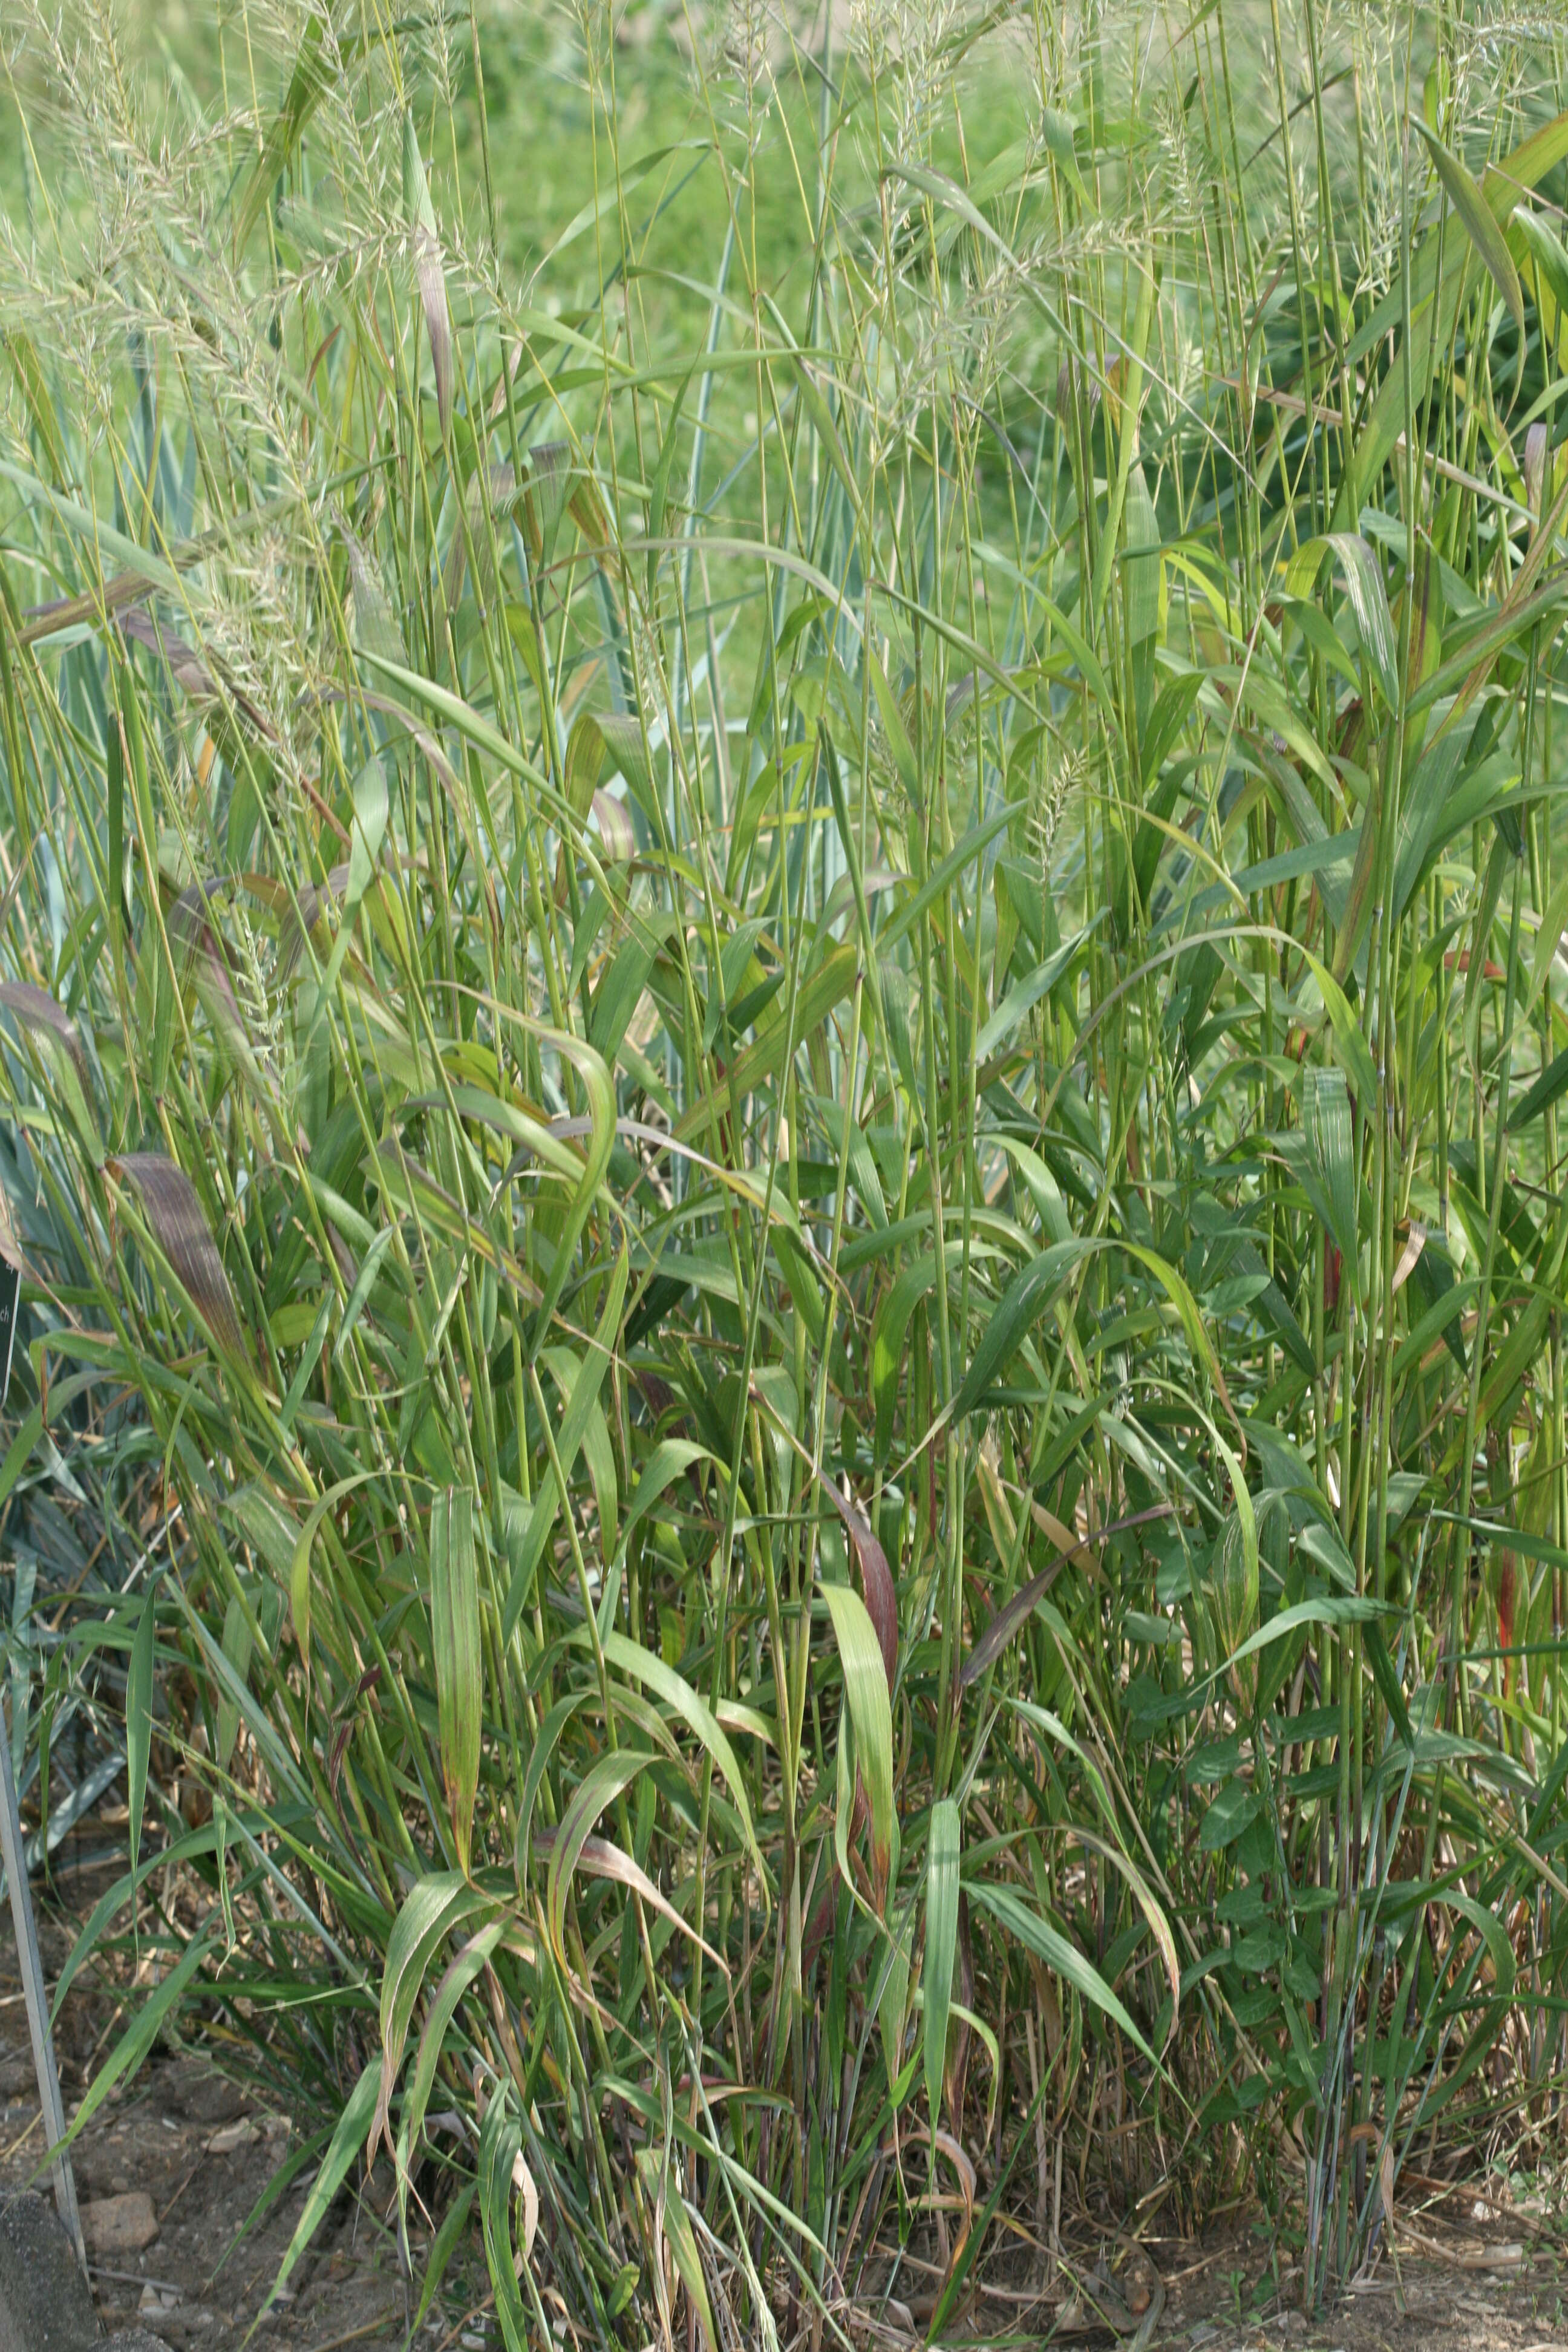 Image of Eastern Bottle-Brush Grass